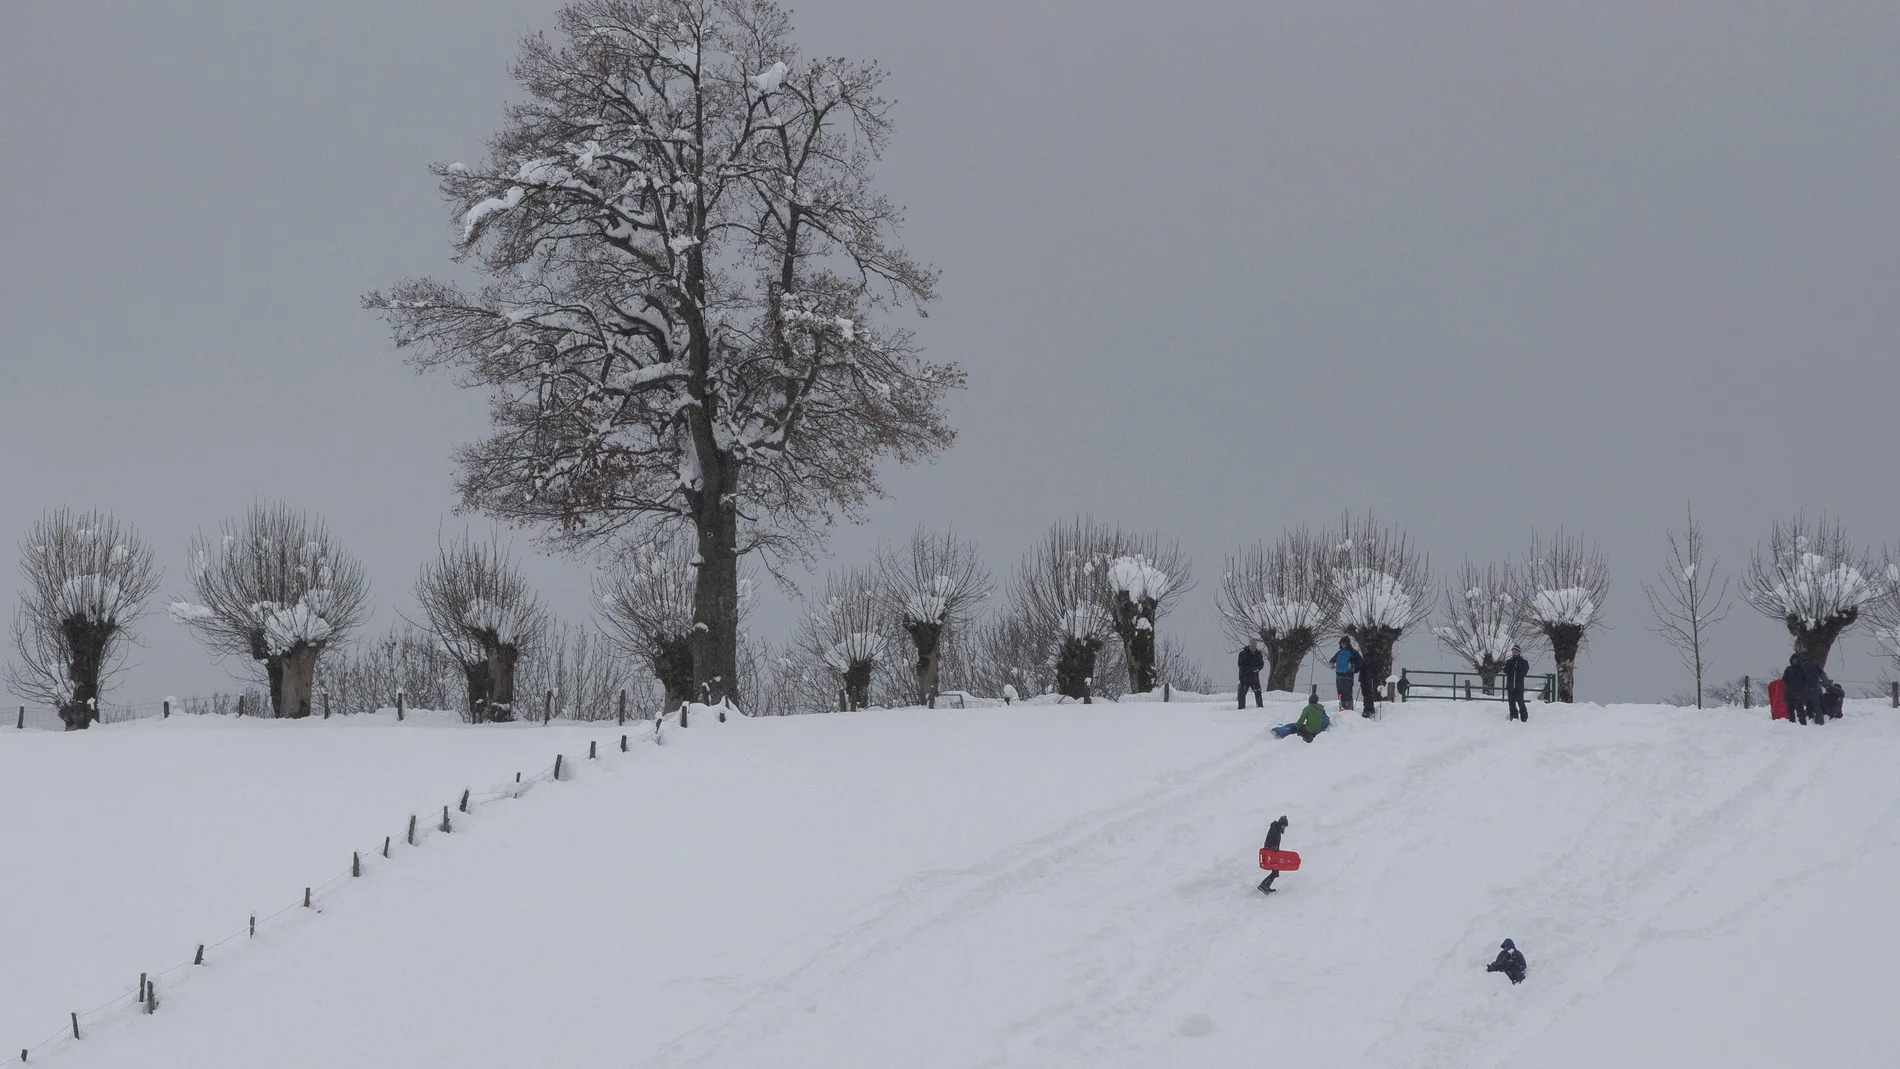 Varias familias se divierten en la nieve acumulada en Roncesvalles tras el primer temporal de nieve y frío que azotó el centro y norte de la comunidad Foral el pasado puente de la Constitución